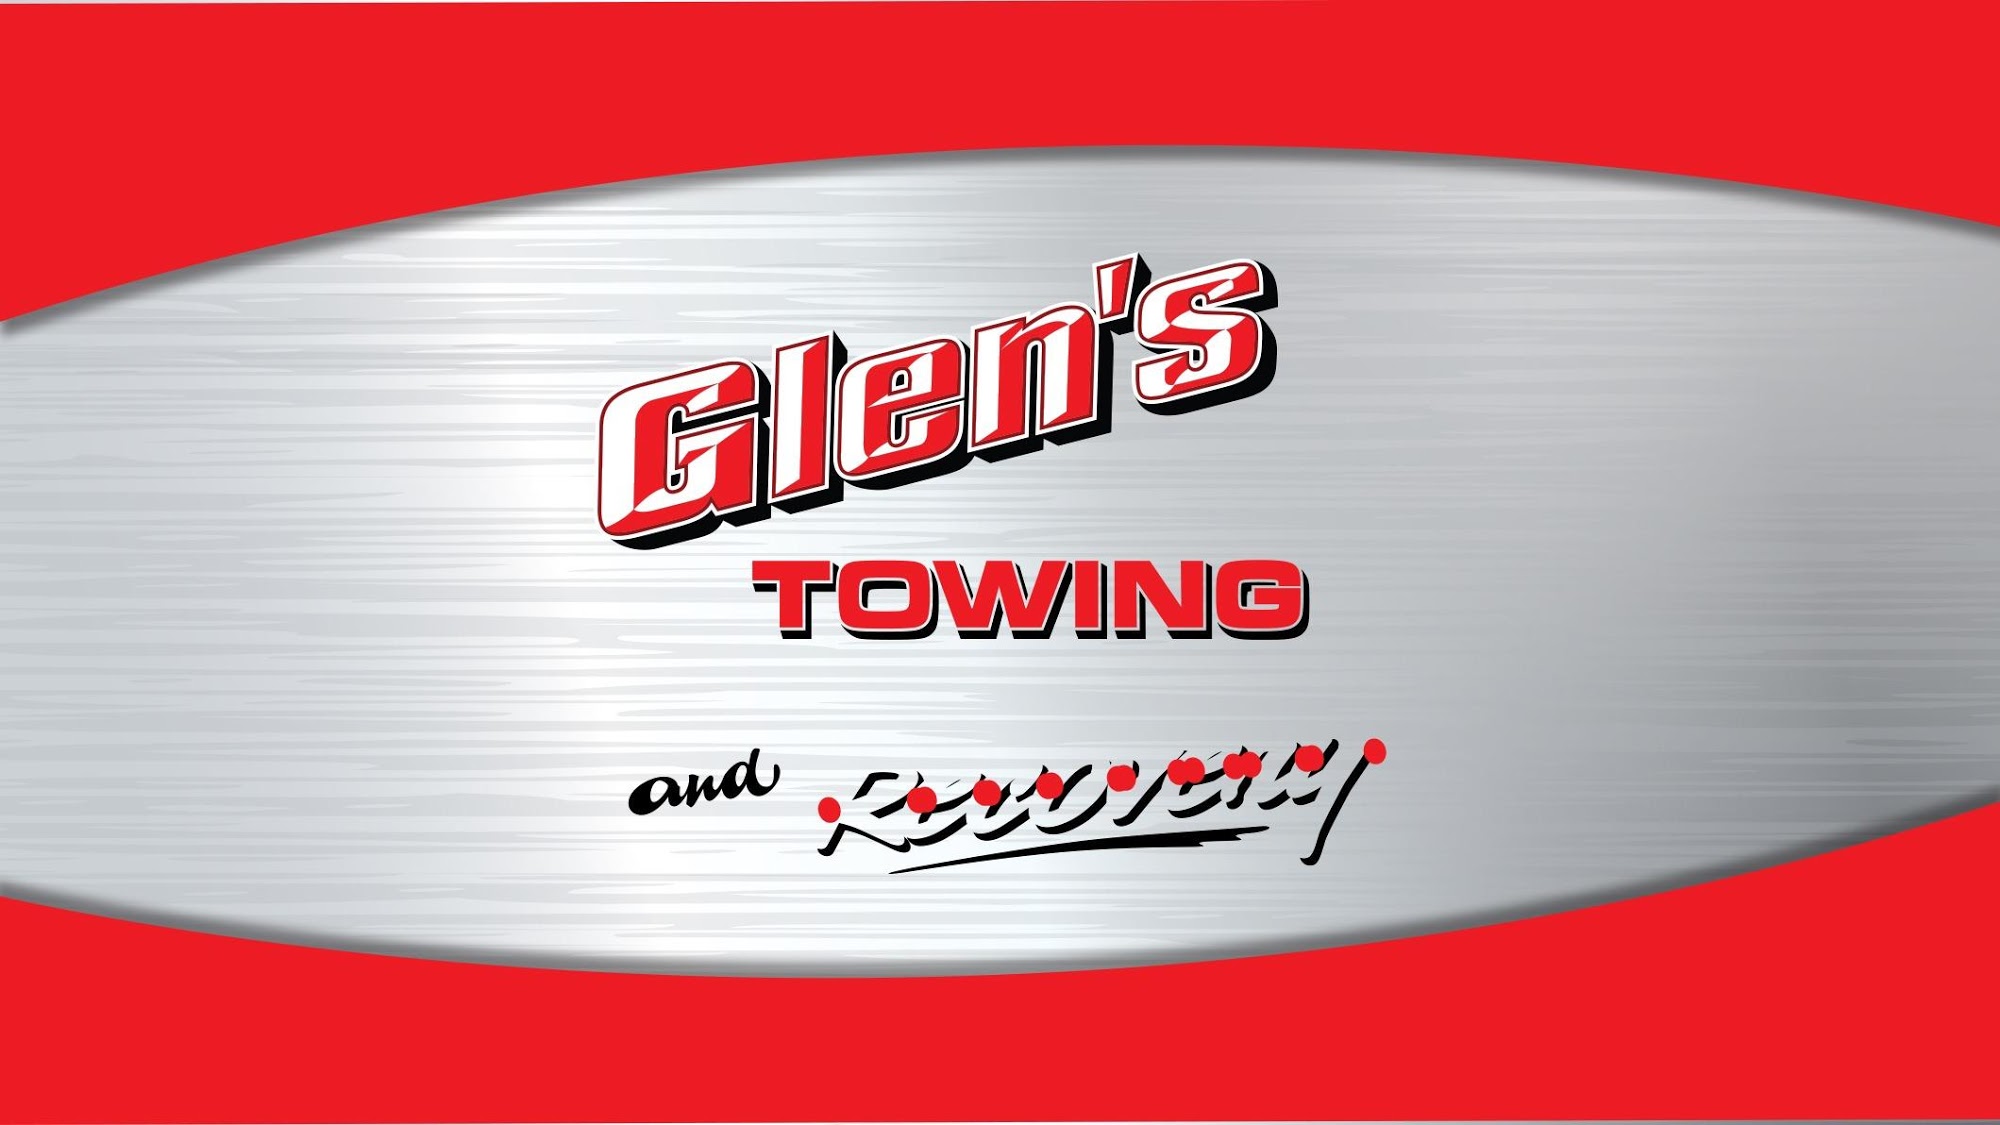 Glen's Automotive & Towing